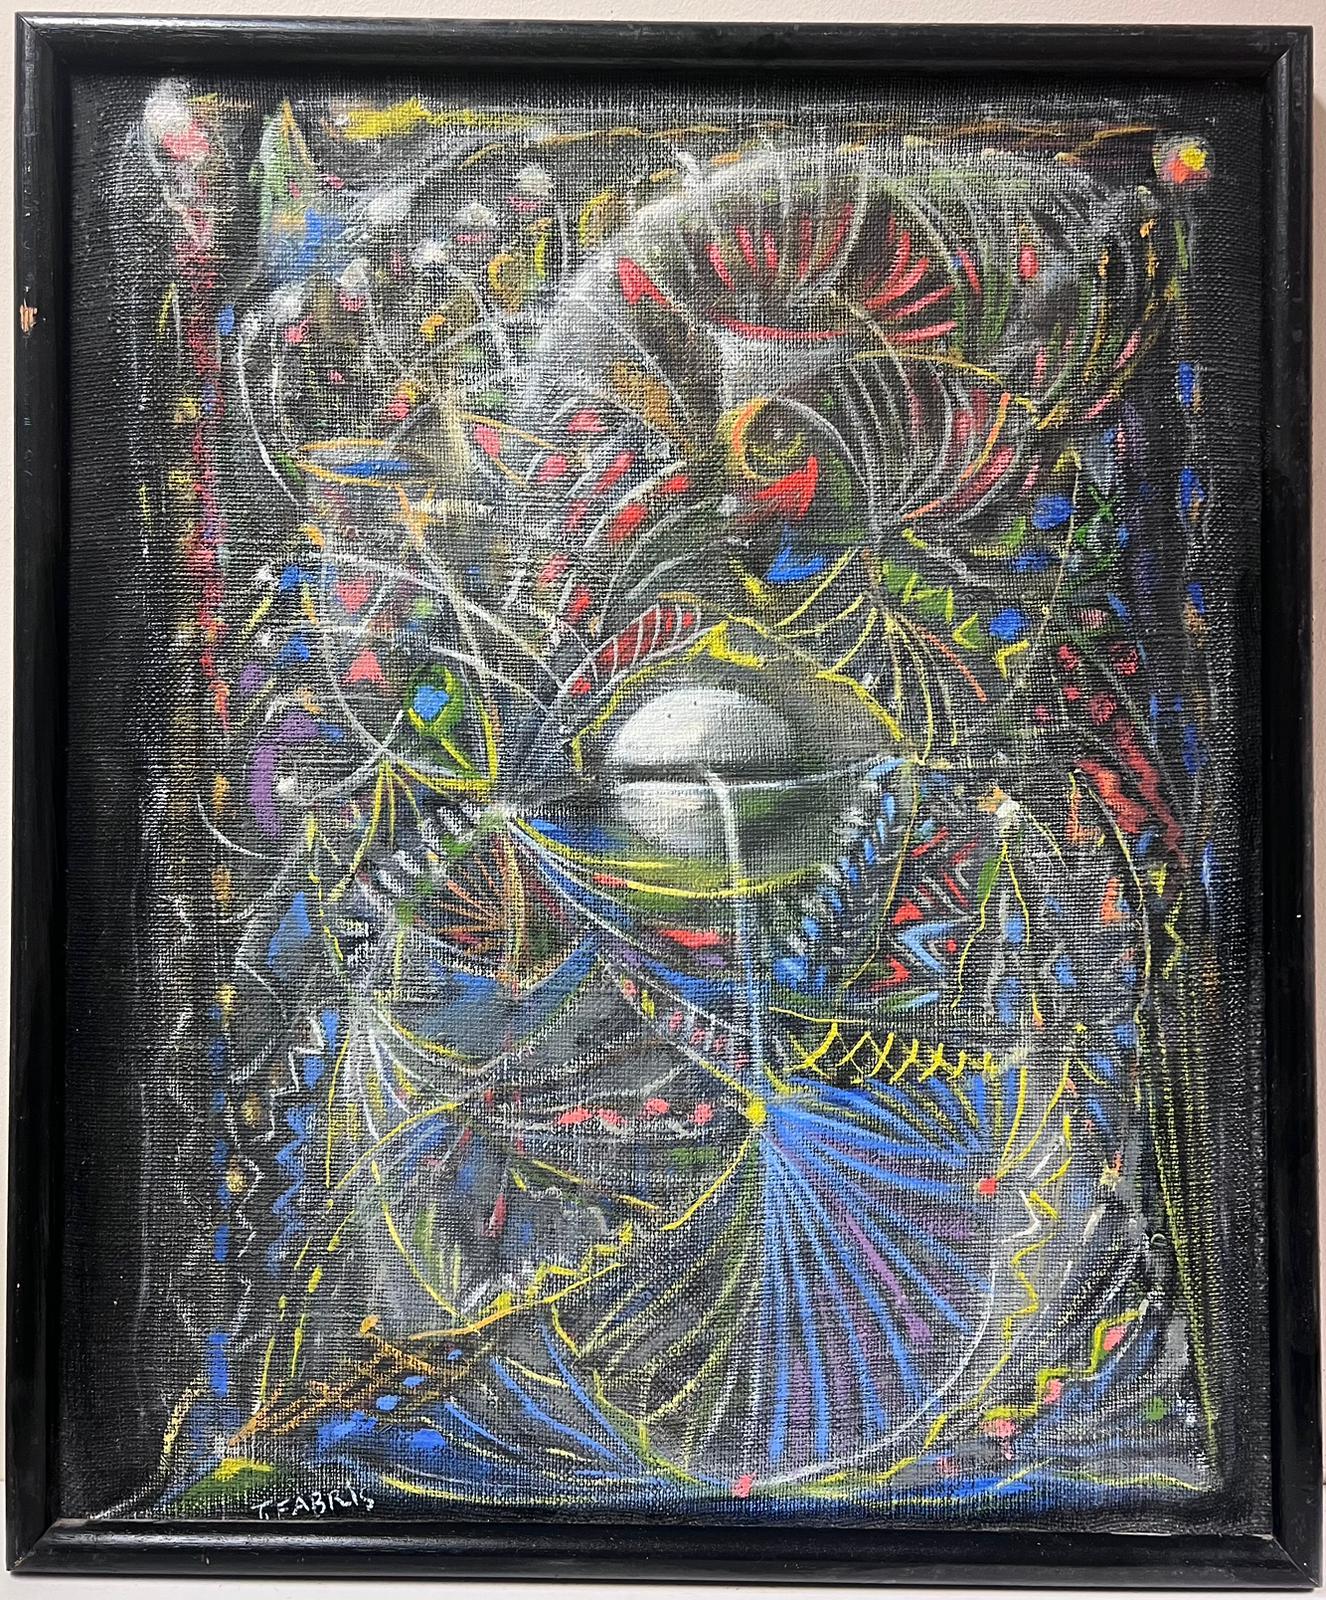 1970's Französisch Surrealist signiert Ölgemälde Spiralling Formen & Muster – Painting von T. Fabris